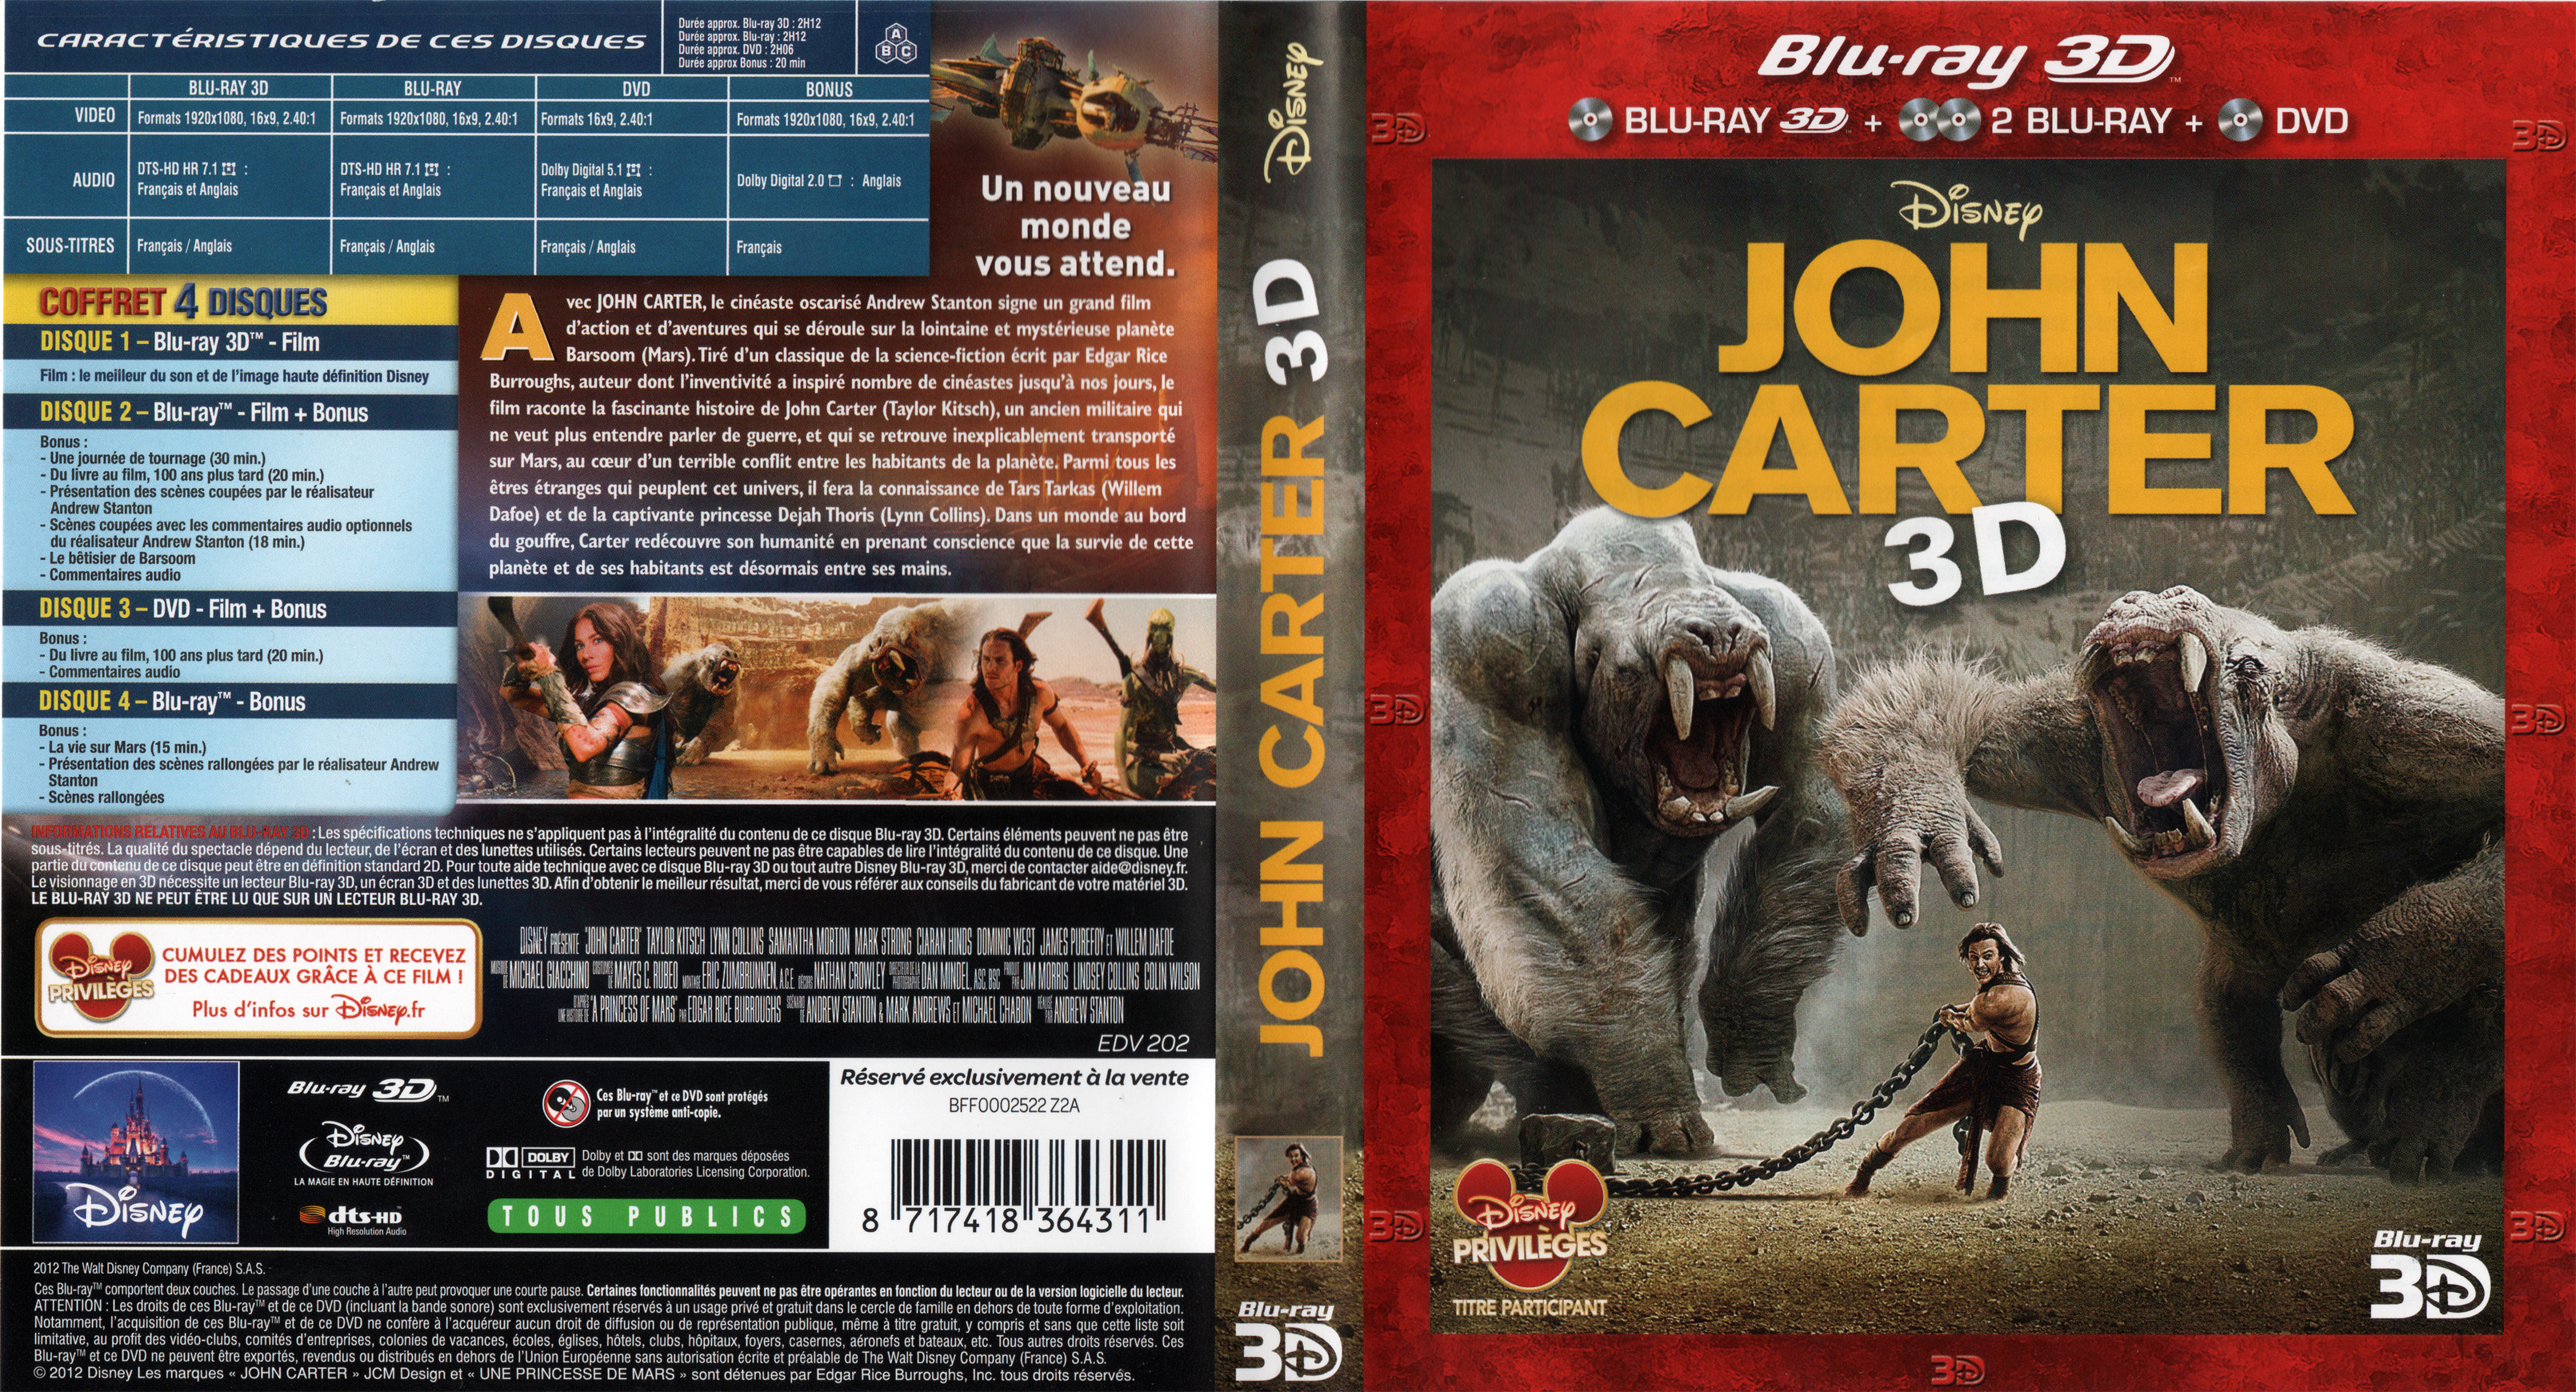 Jaquette DVD John Carter 3D (BLU-RAY)